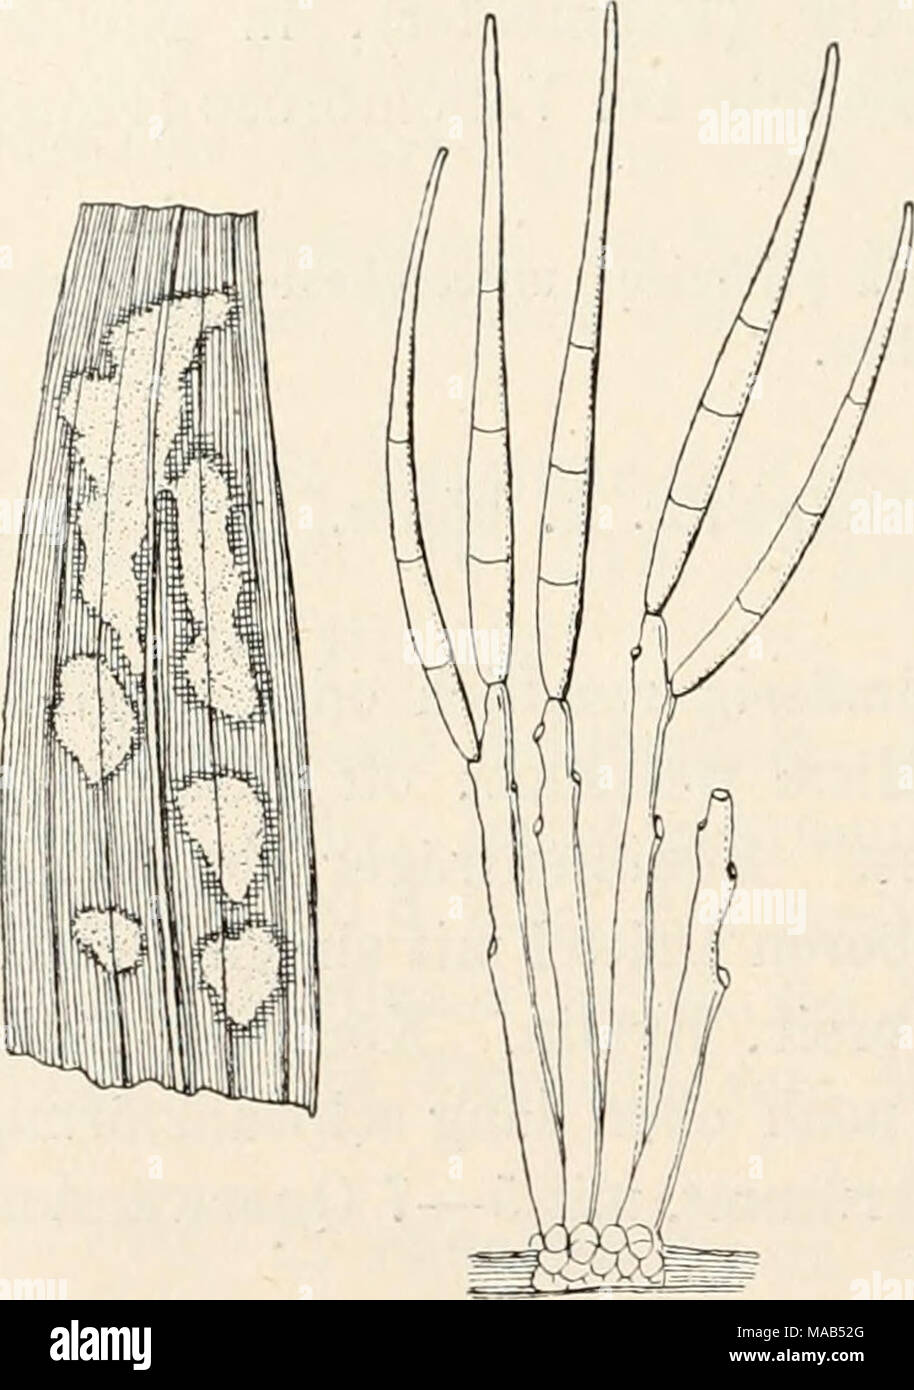 . Dr. L. Rabenhorst's Kryptogamen-Flora von Deutschland, Oesterreich und der Schweiz . Cercosporella pantoleuca Sacc. Habitus der Basen auf Plantago nat. Gr. und Konidienträger mit Konidien, stark verg. (Nach Saccardo.) 874. C. pantoleuca Sacc. Fungi ital. Tab. 679 (1881); Syll. lY, 219. Syn. Cercospora pantoleuca Sacc. Michelia I, 268 (1878). Exs. Eoumeguere Fungi gall. 3496; Eabenhorst Fungi eur. 2778; öydow Myc. march. 1687. Blattflecken oberseitig, buch- tig, beim Trocknen weiss werdend, braun herandet. Rasen dicht ge- häuft, weiss. Konidienträger locker büschelförmig, fädig, aufsteigend,  Stock Photo